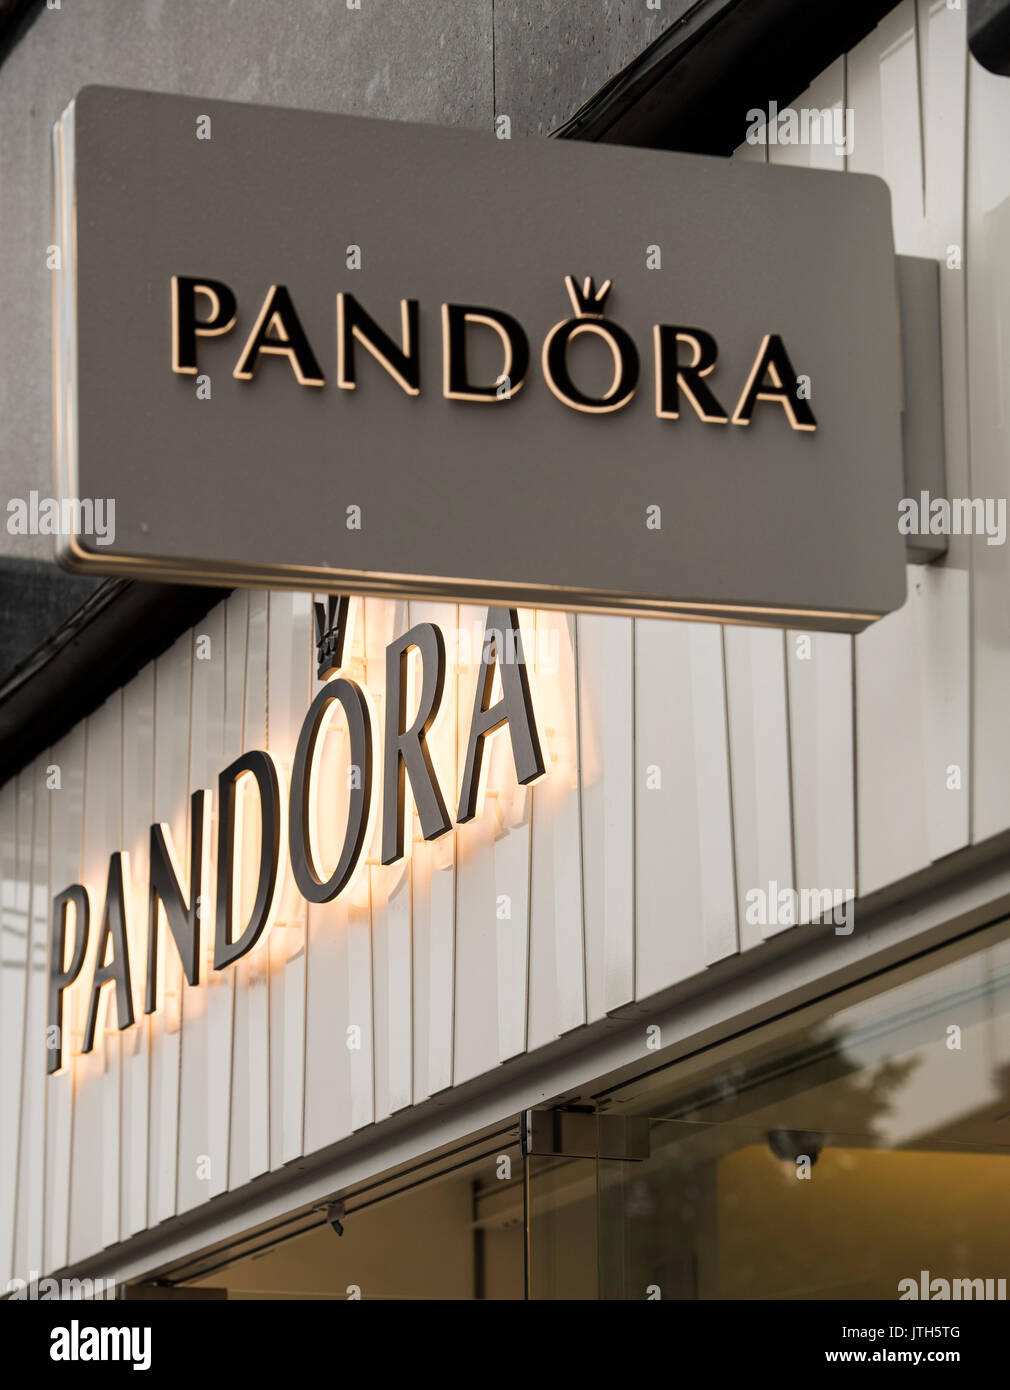 Brentwood, Essex, 9 août 2917 bijoux danois Pandora publié ses résultats du deuxième trimestre inférieur aux attentes. La société a enregistré un chiffre d'affaires du deuxième trimestre de 4,83 milliards de couronnes, en dessous de la moyenne de 4,90 milliards d'estimation des analystes interrogés par Reuters. Photographies de signalisation Banque D'Images